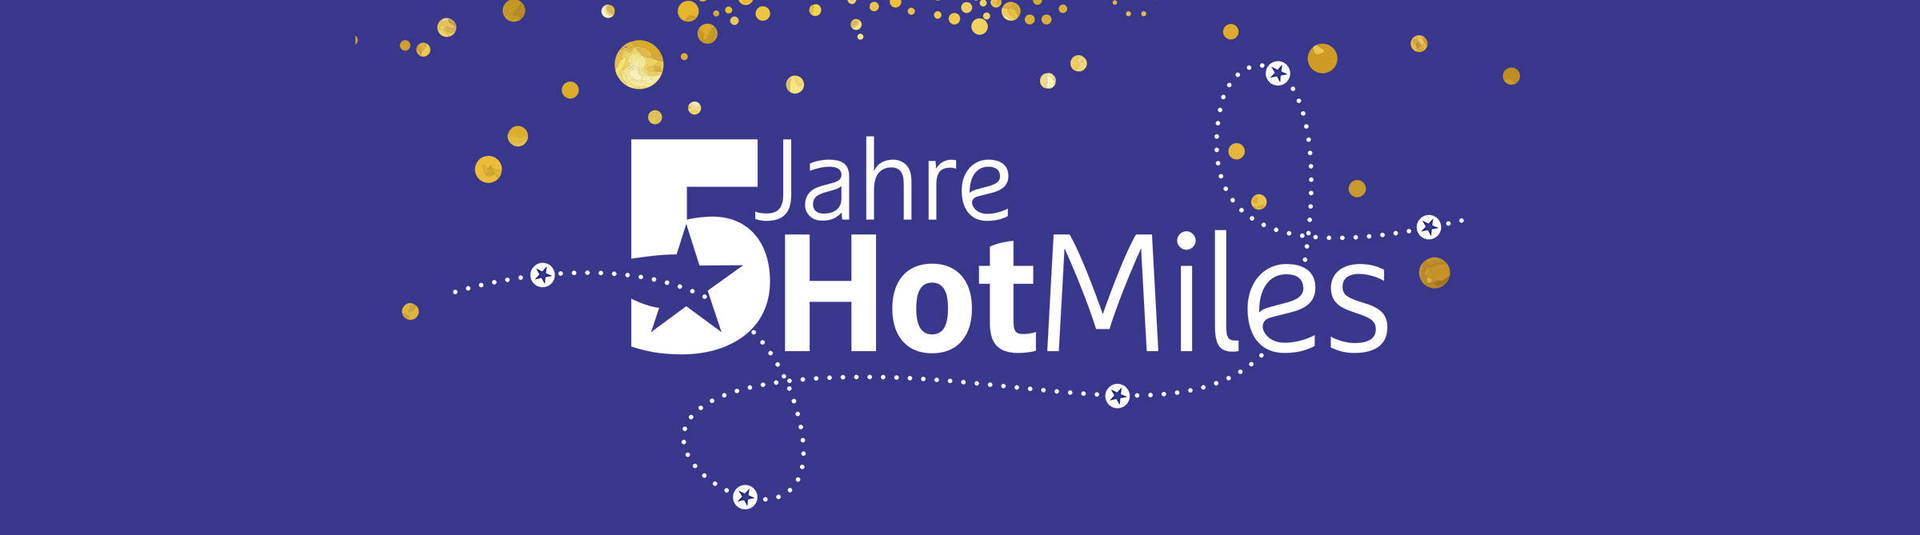 5 Jahre HotMiles - H-Hotels.com